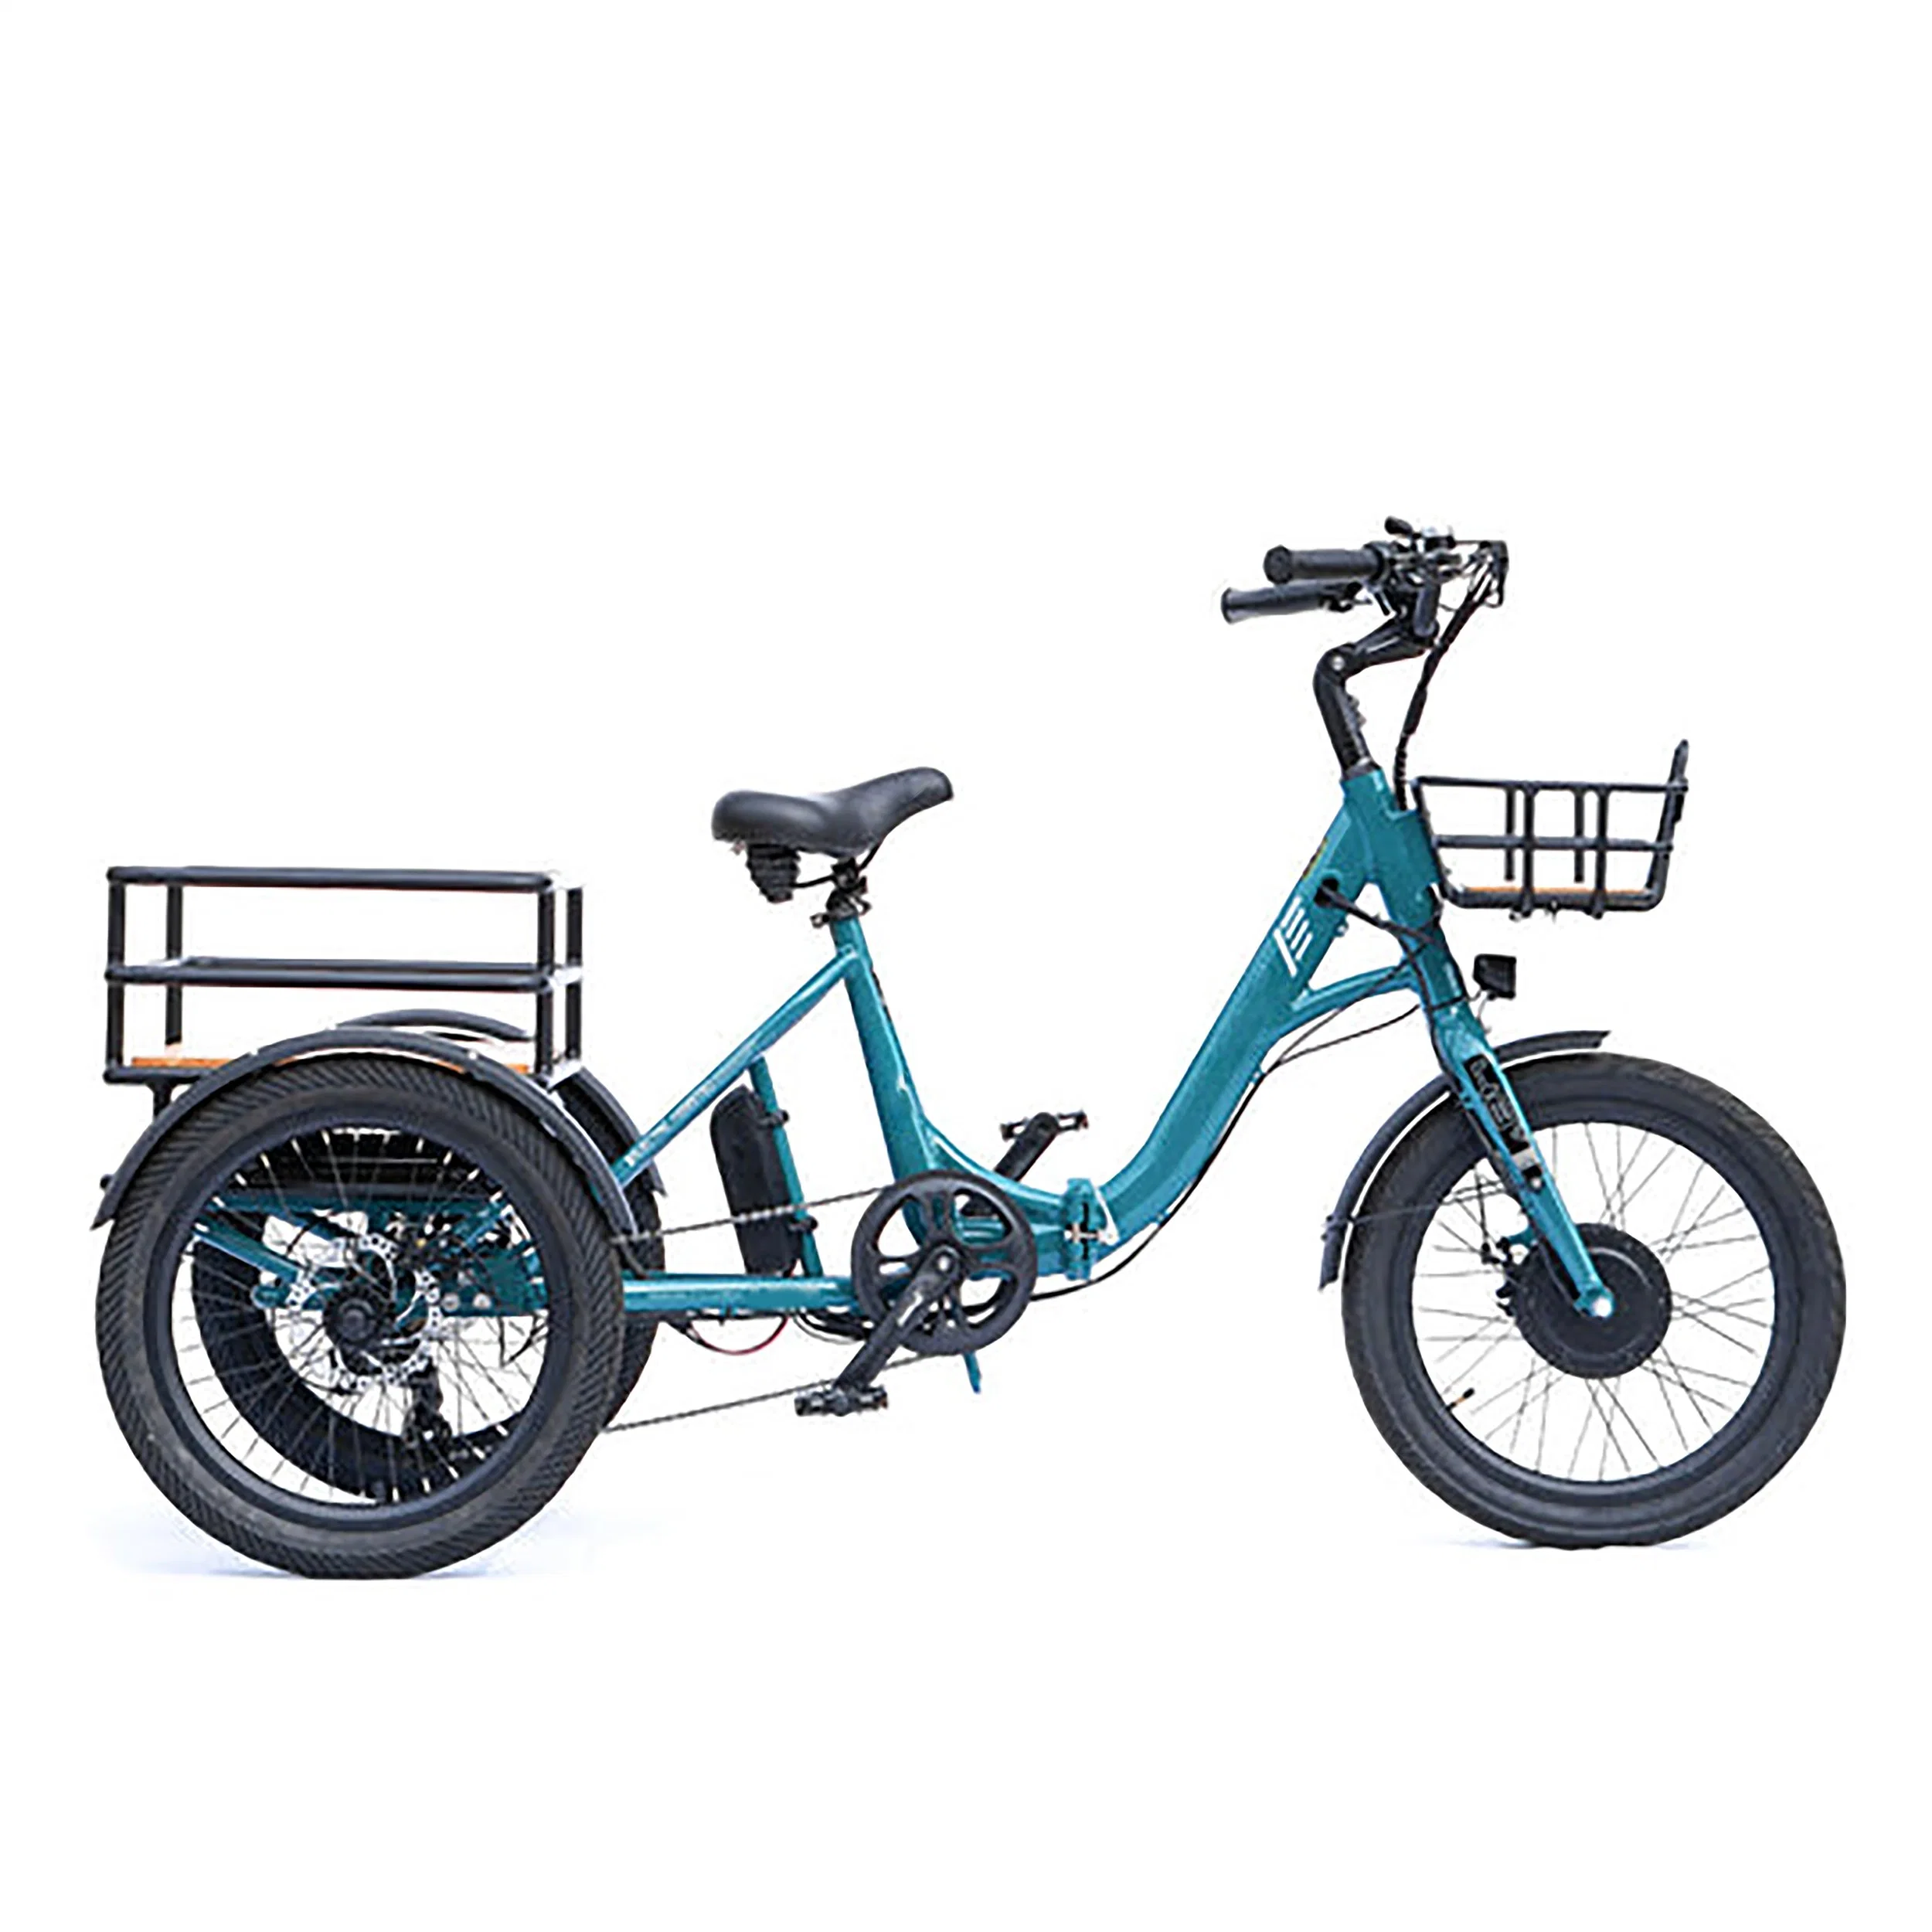 Pneu gordo dobrável e bicicleta bicicleta elétrica bicicleta City Road Moto eBike motor elétrico de sujidade